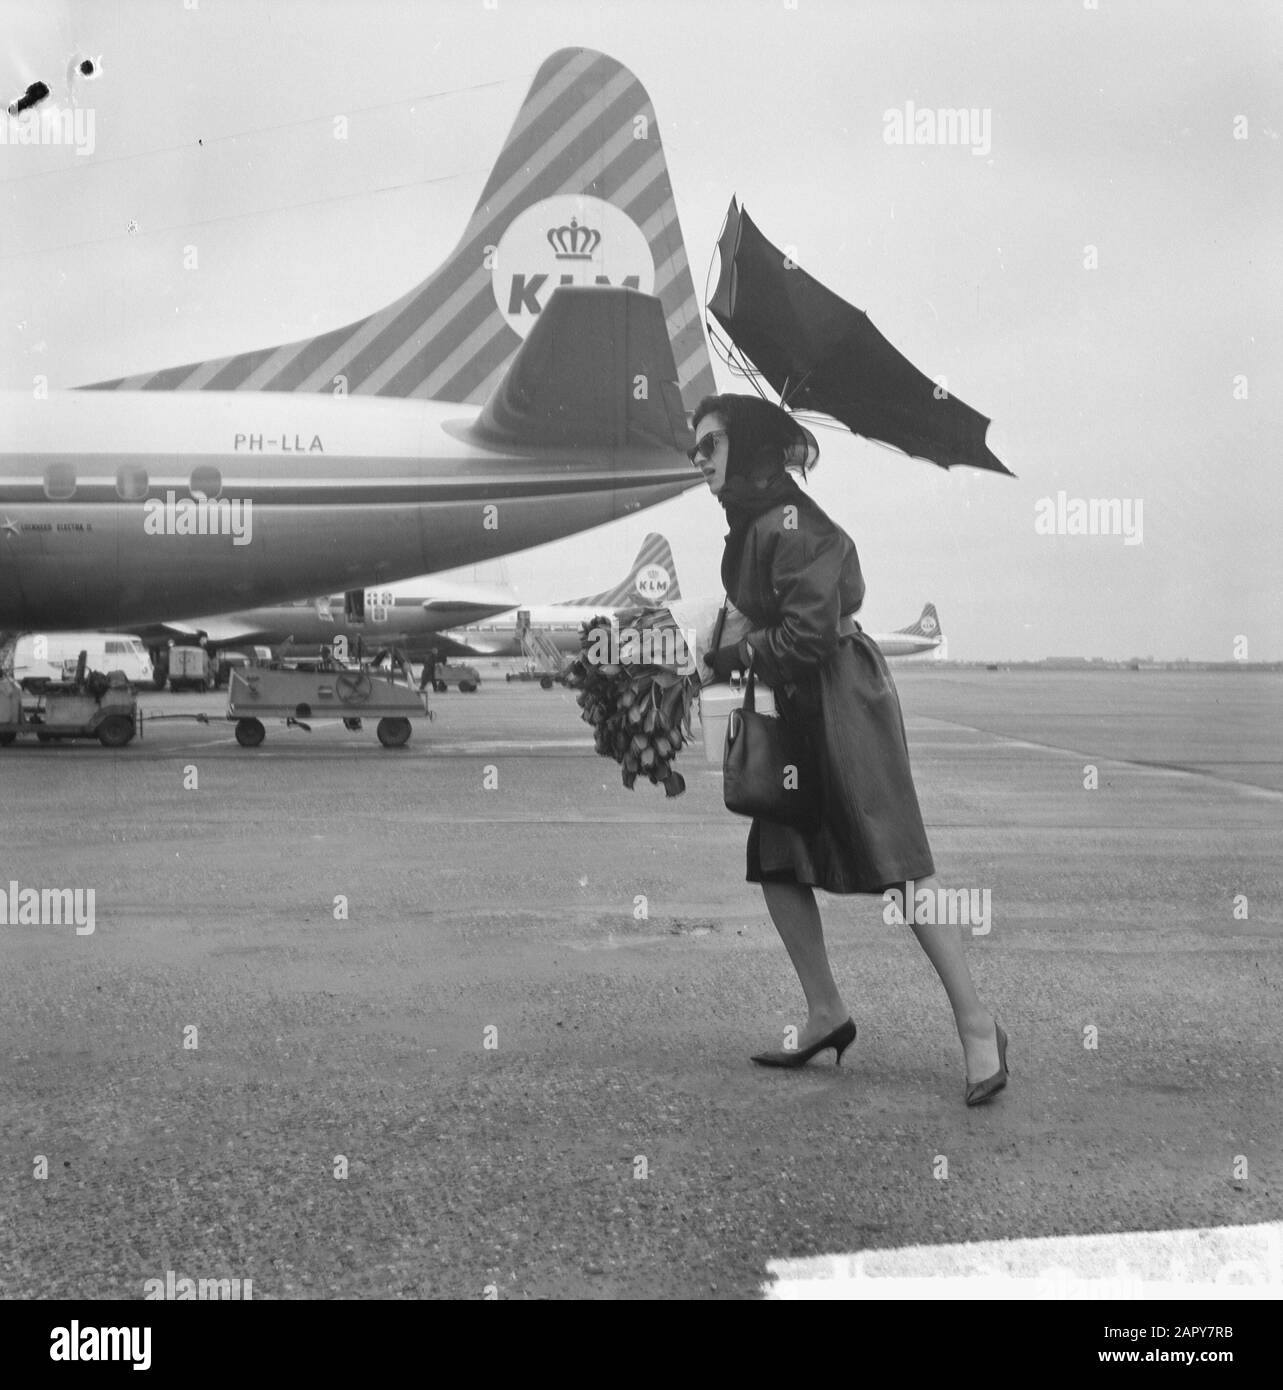 Airport Woman avec grand bouquet de fleurs. Son parapluie est détruit par  le vent violent] Date: 15 avril 1963 lieu: Schiphol mots clés: Fleurs,  parapluies, avions, aéroports Photo Stock - Alamy